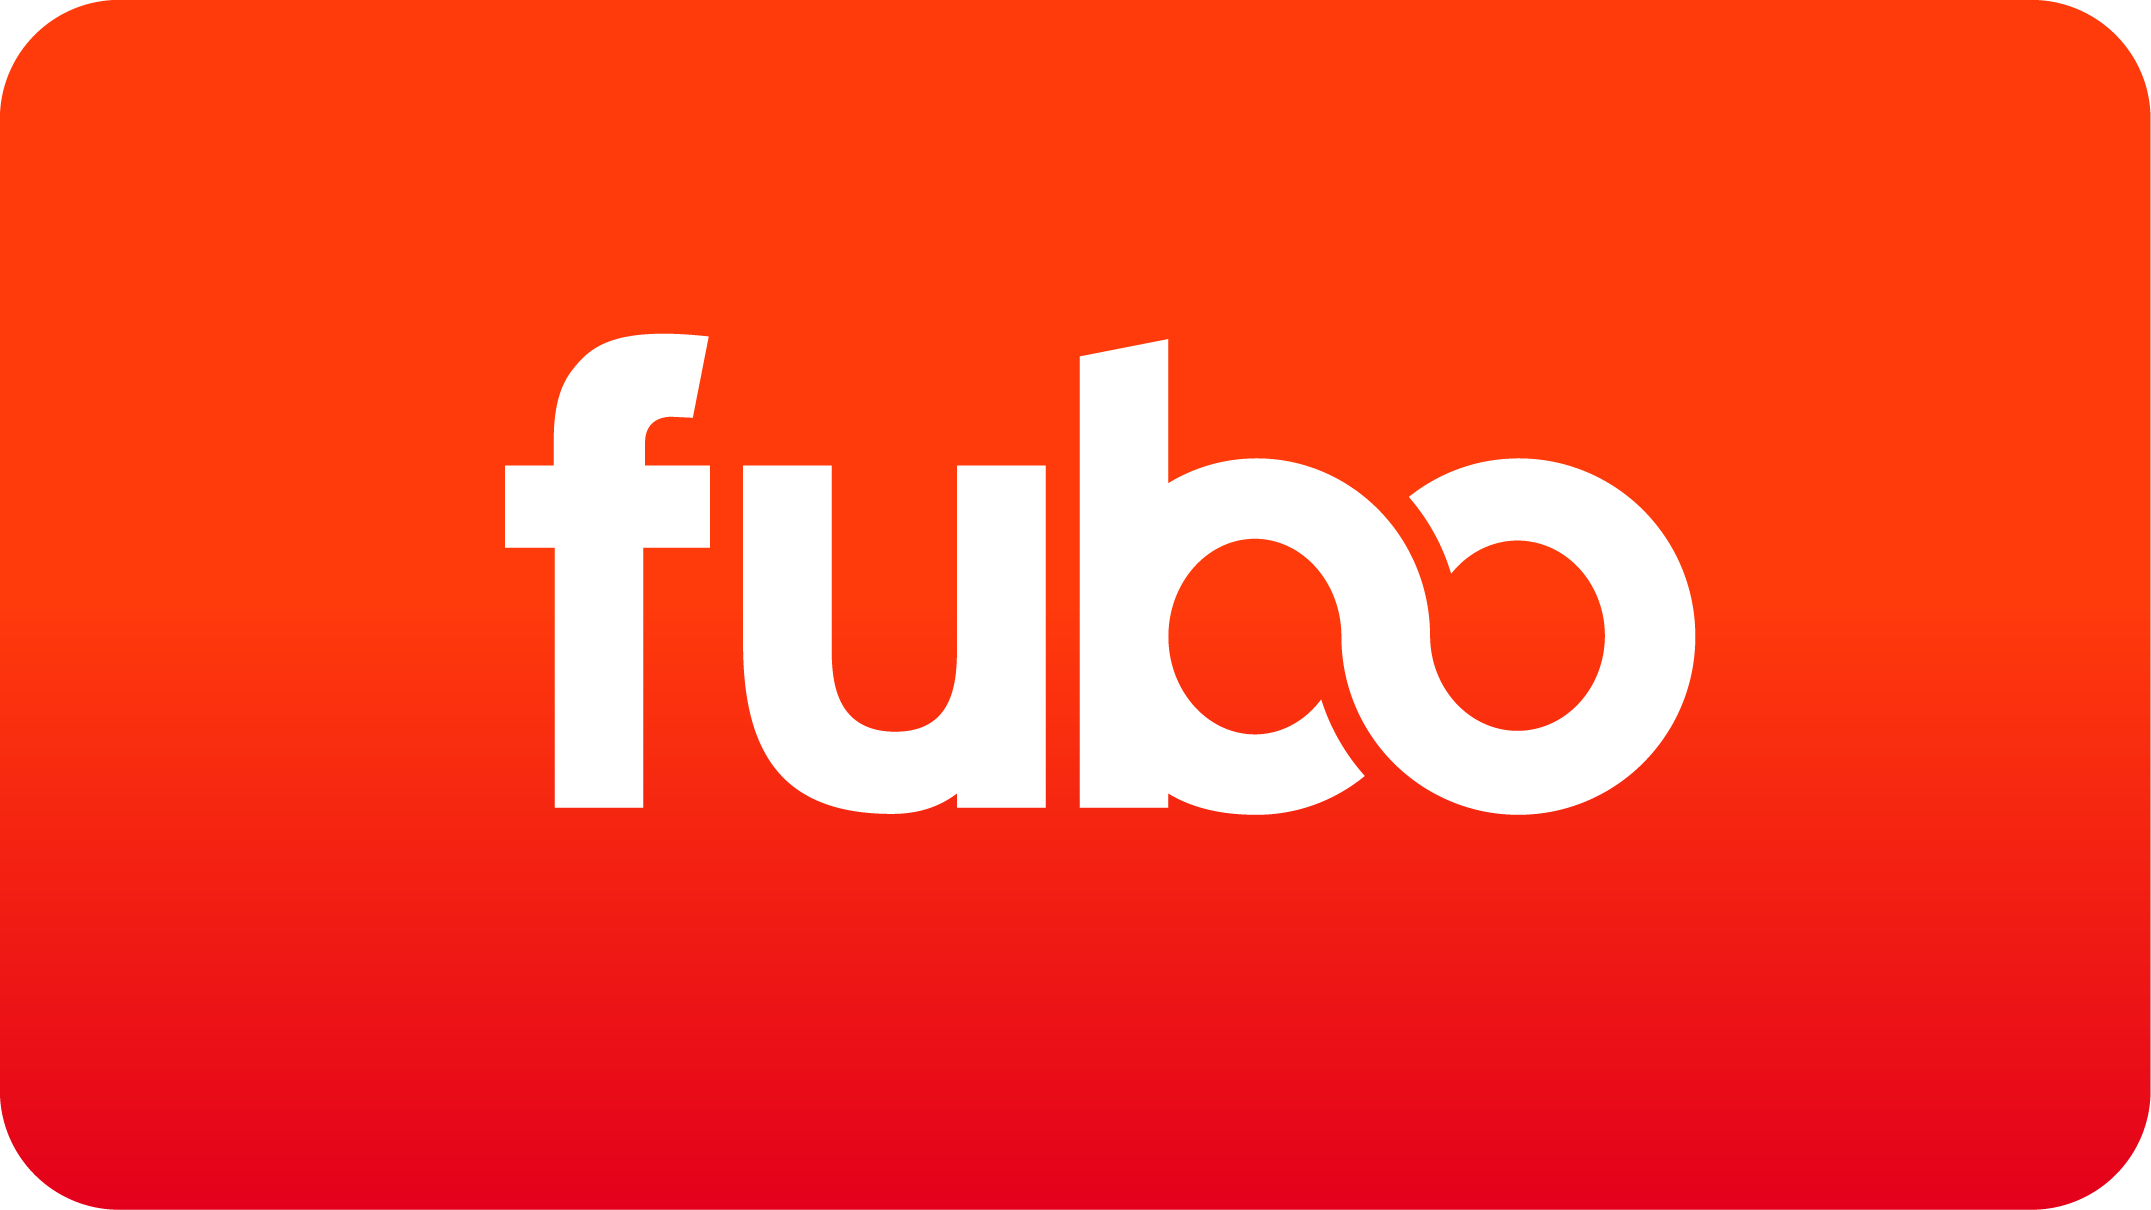 Will Fubo Add Turner Networks like TNT & TBS? – Ask Luke